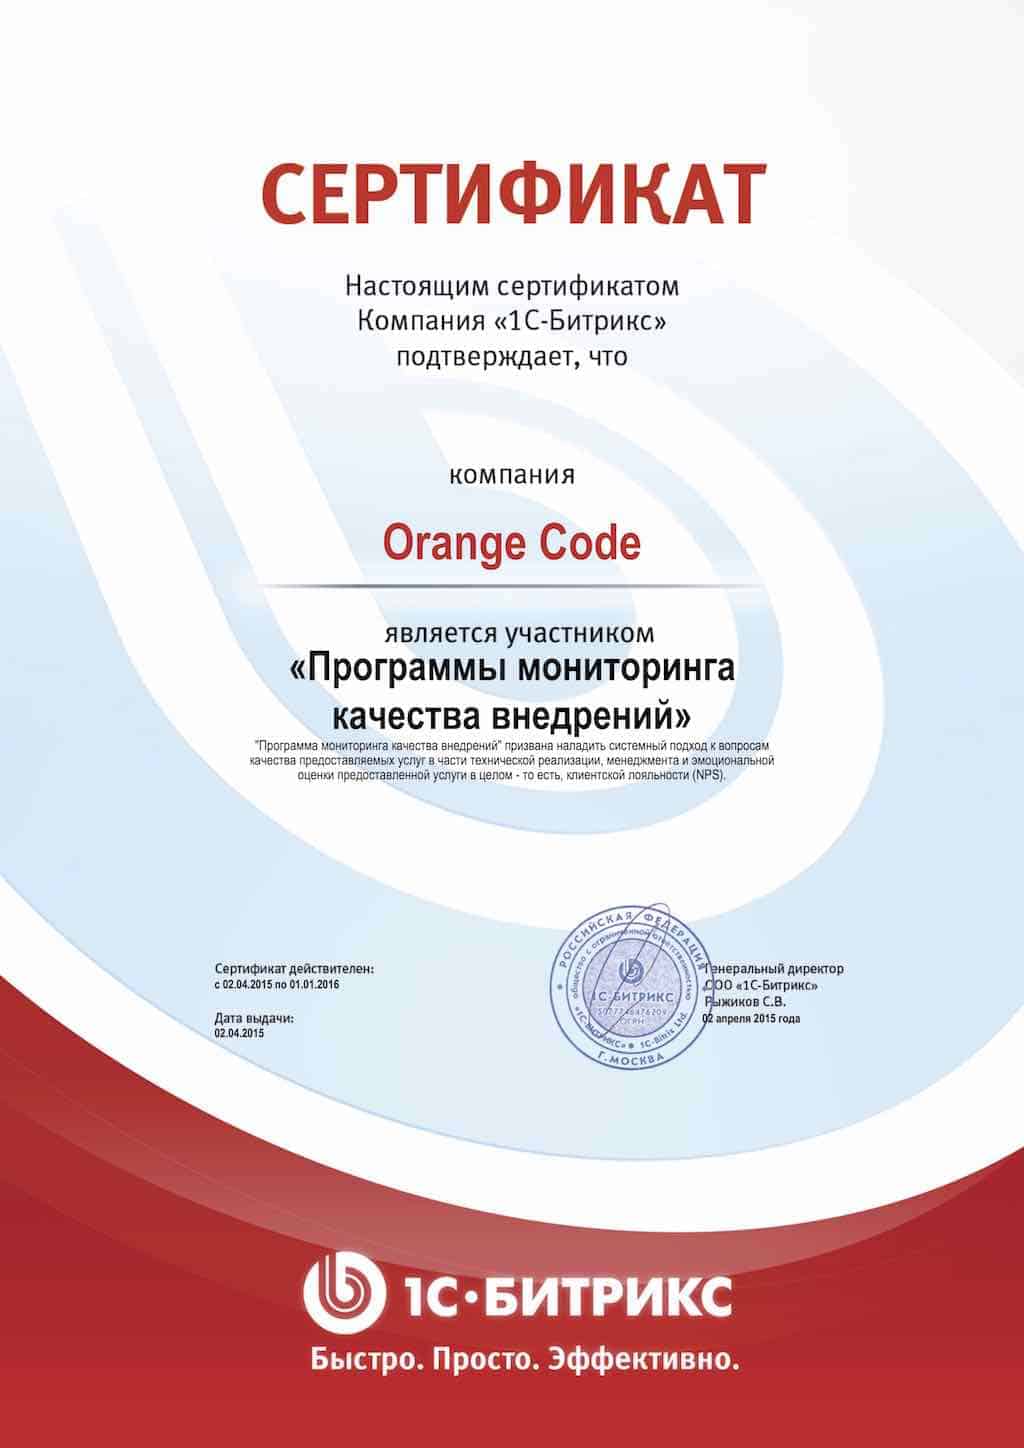 Orange Code - участник программы мониторинга качества 1С-Битрикс